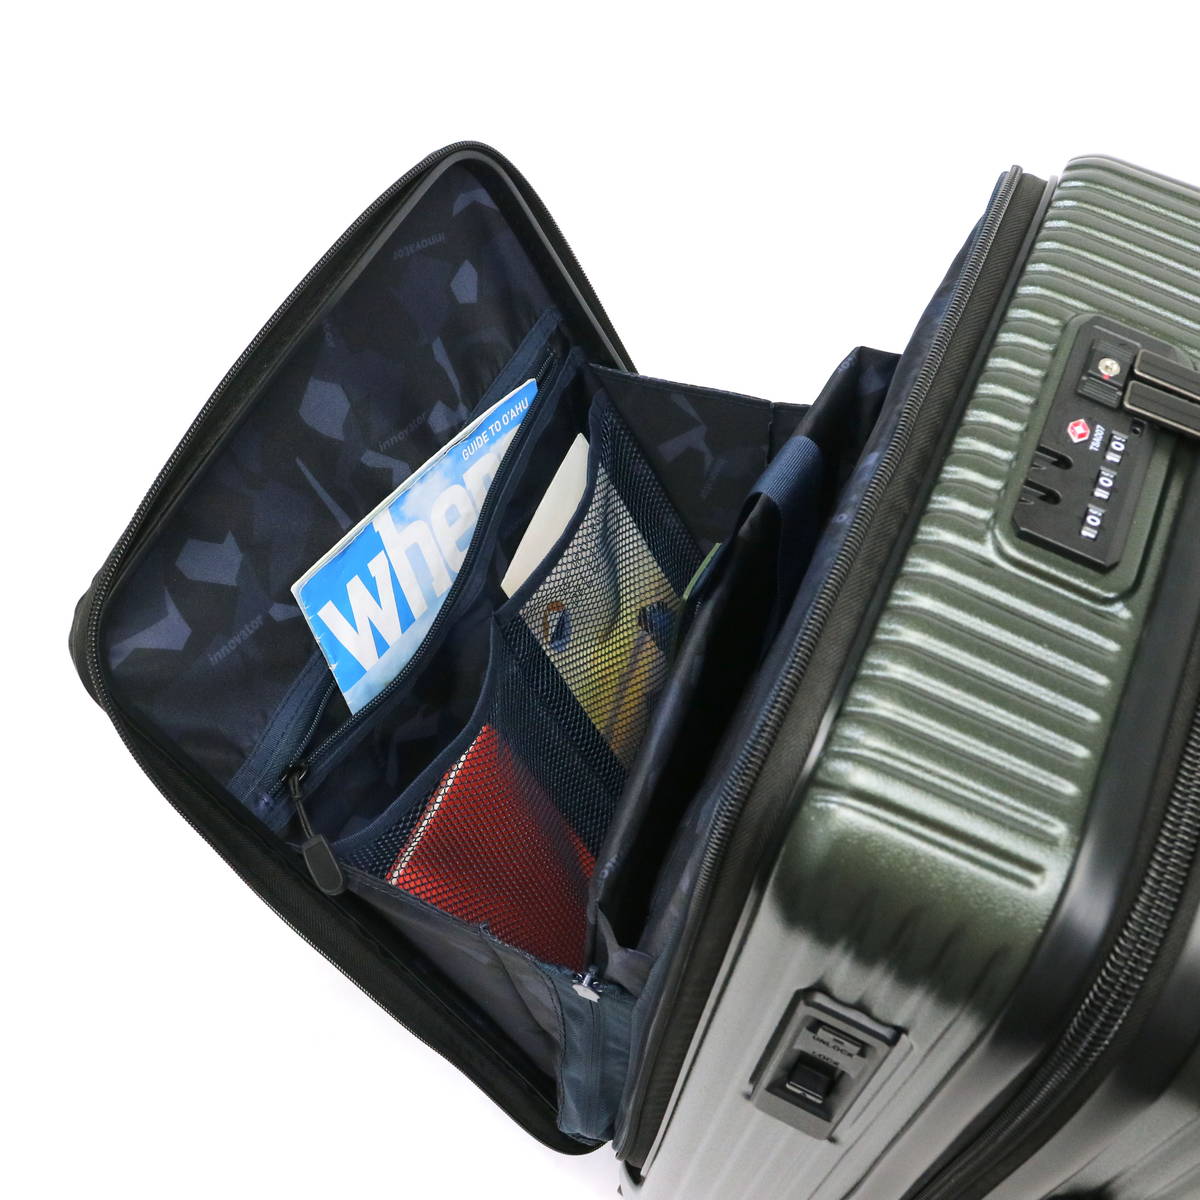 INV 50 イノベーター　スーツケース　 機内持ち込み 多機能モデル I